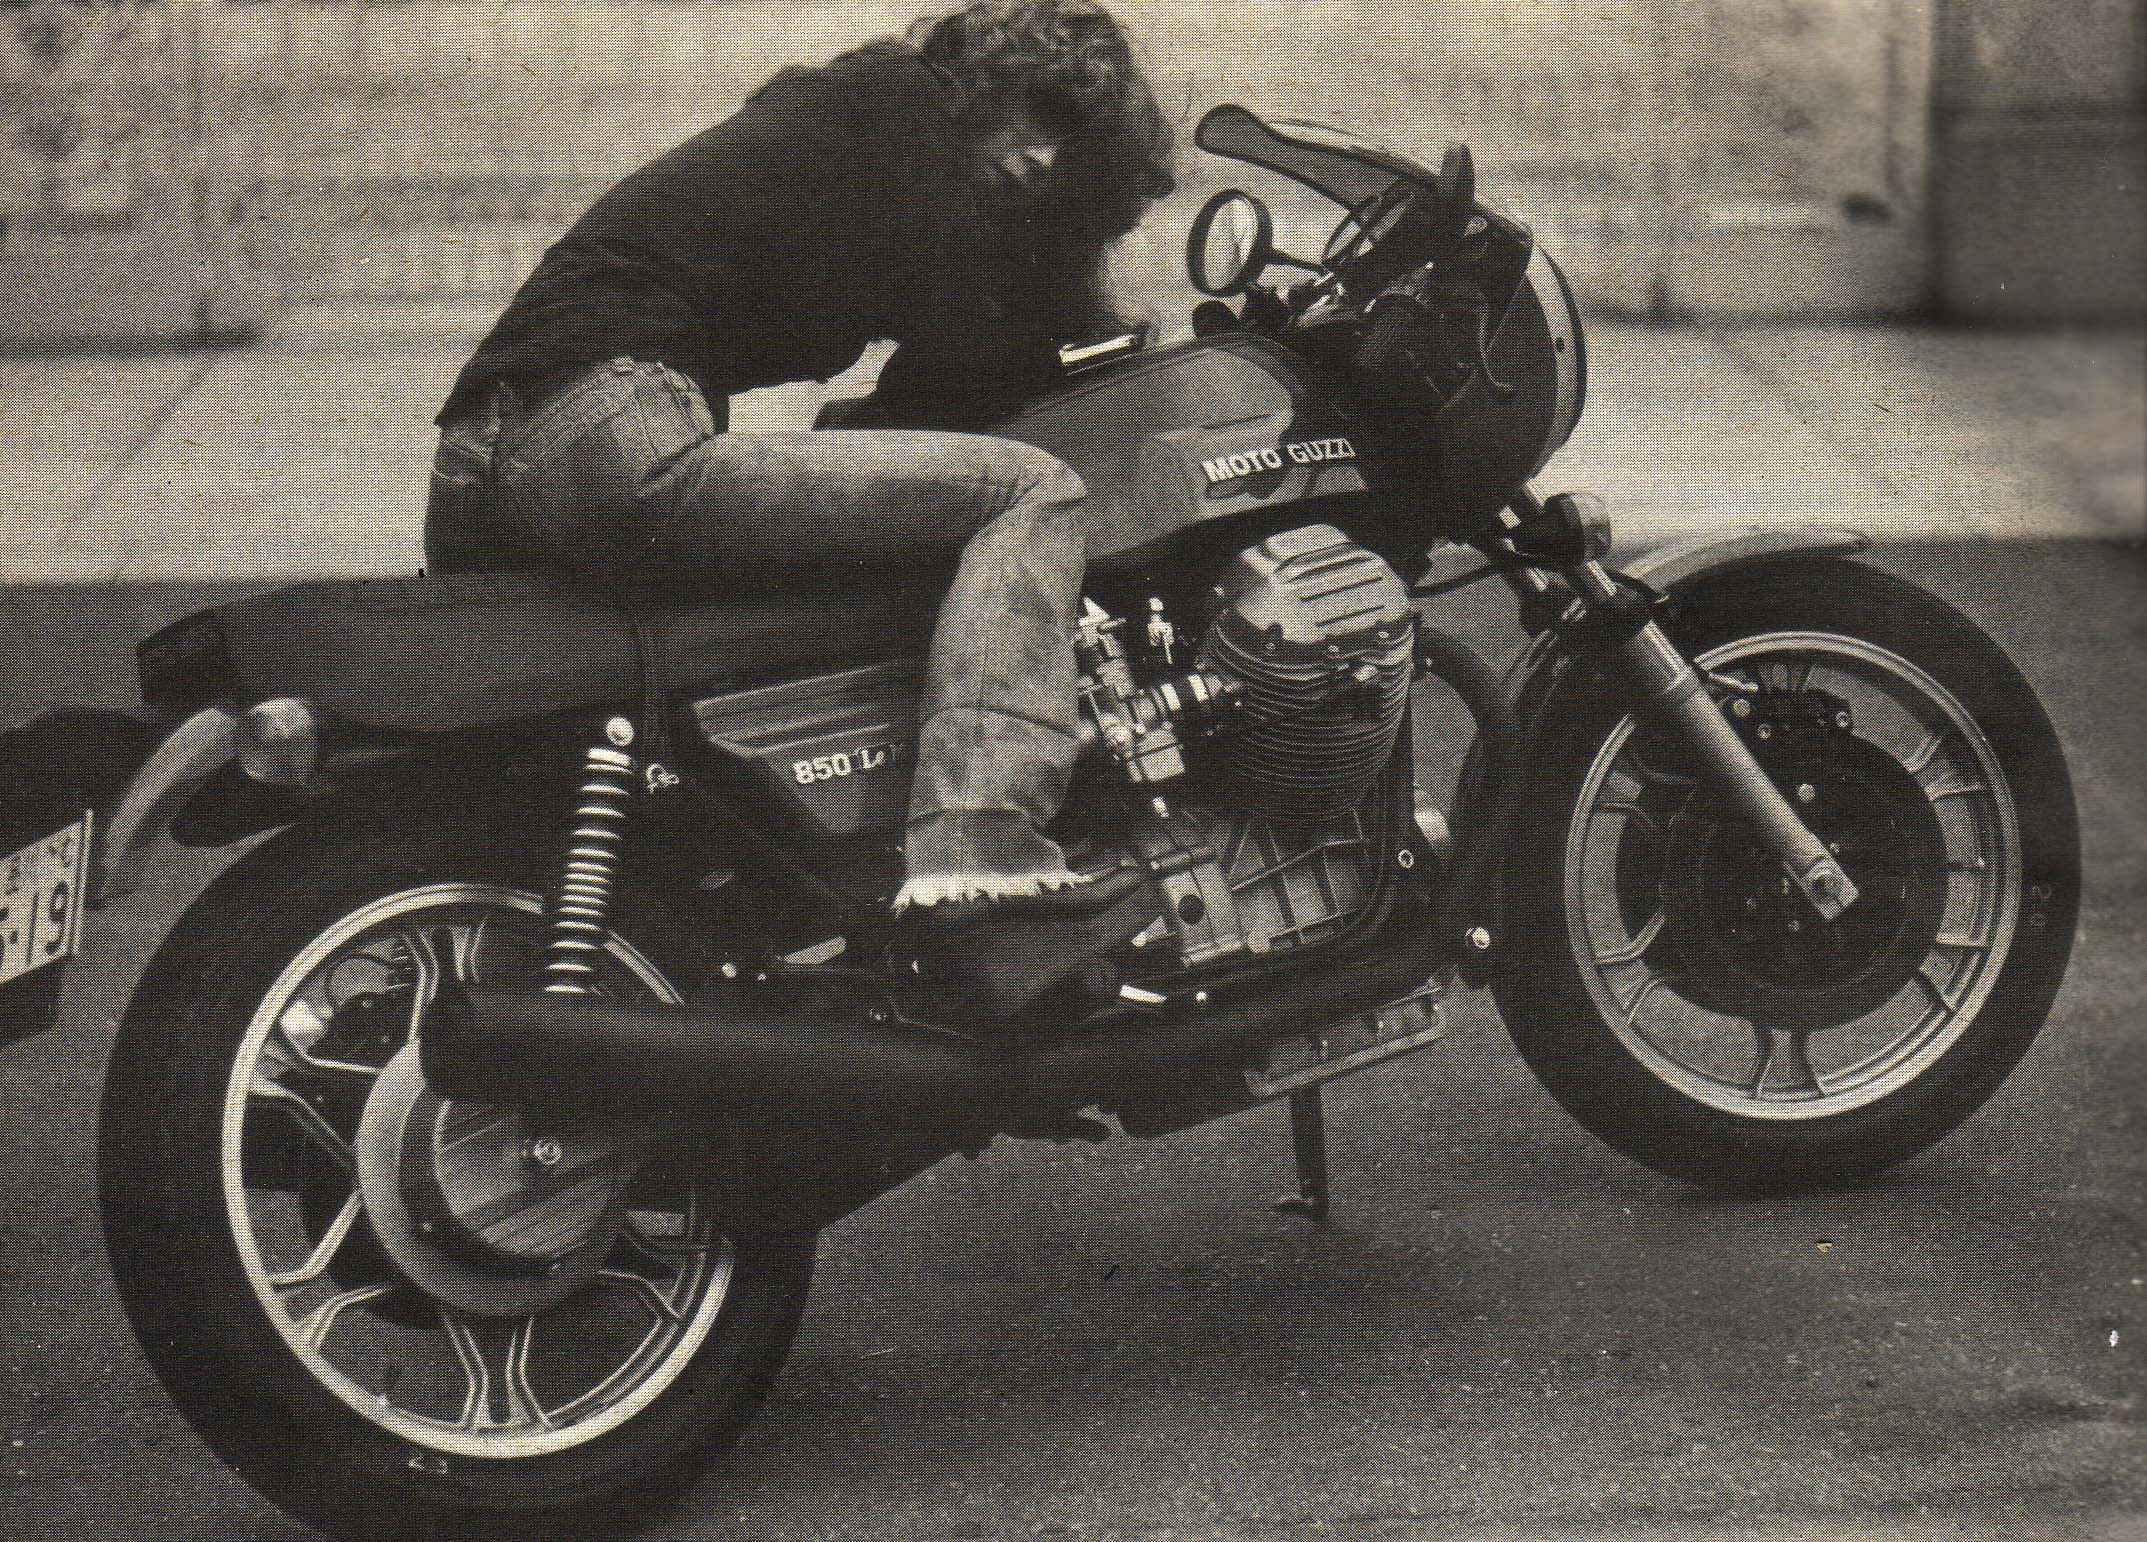 モトグッチ850ルマン Motoguzzi 850 Lemans 70年代のオートバイ